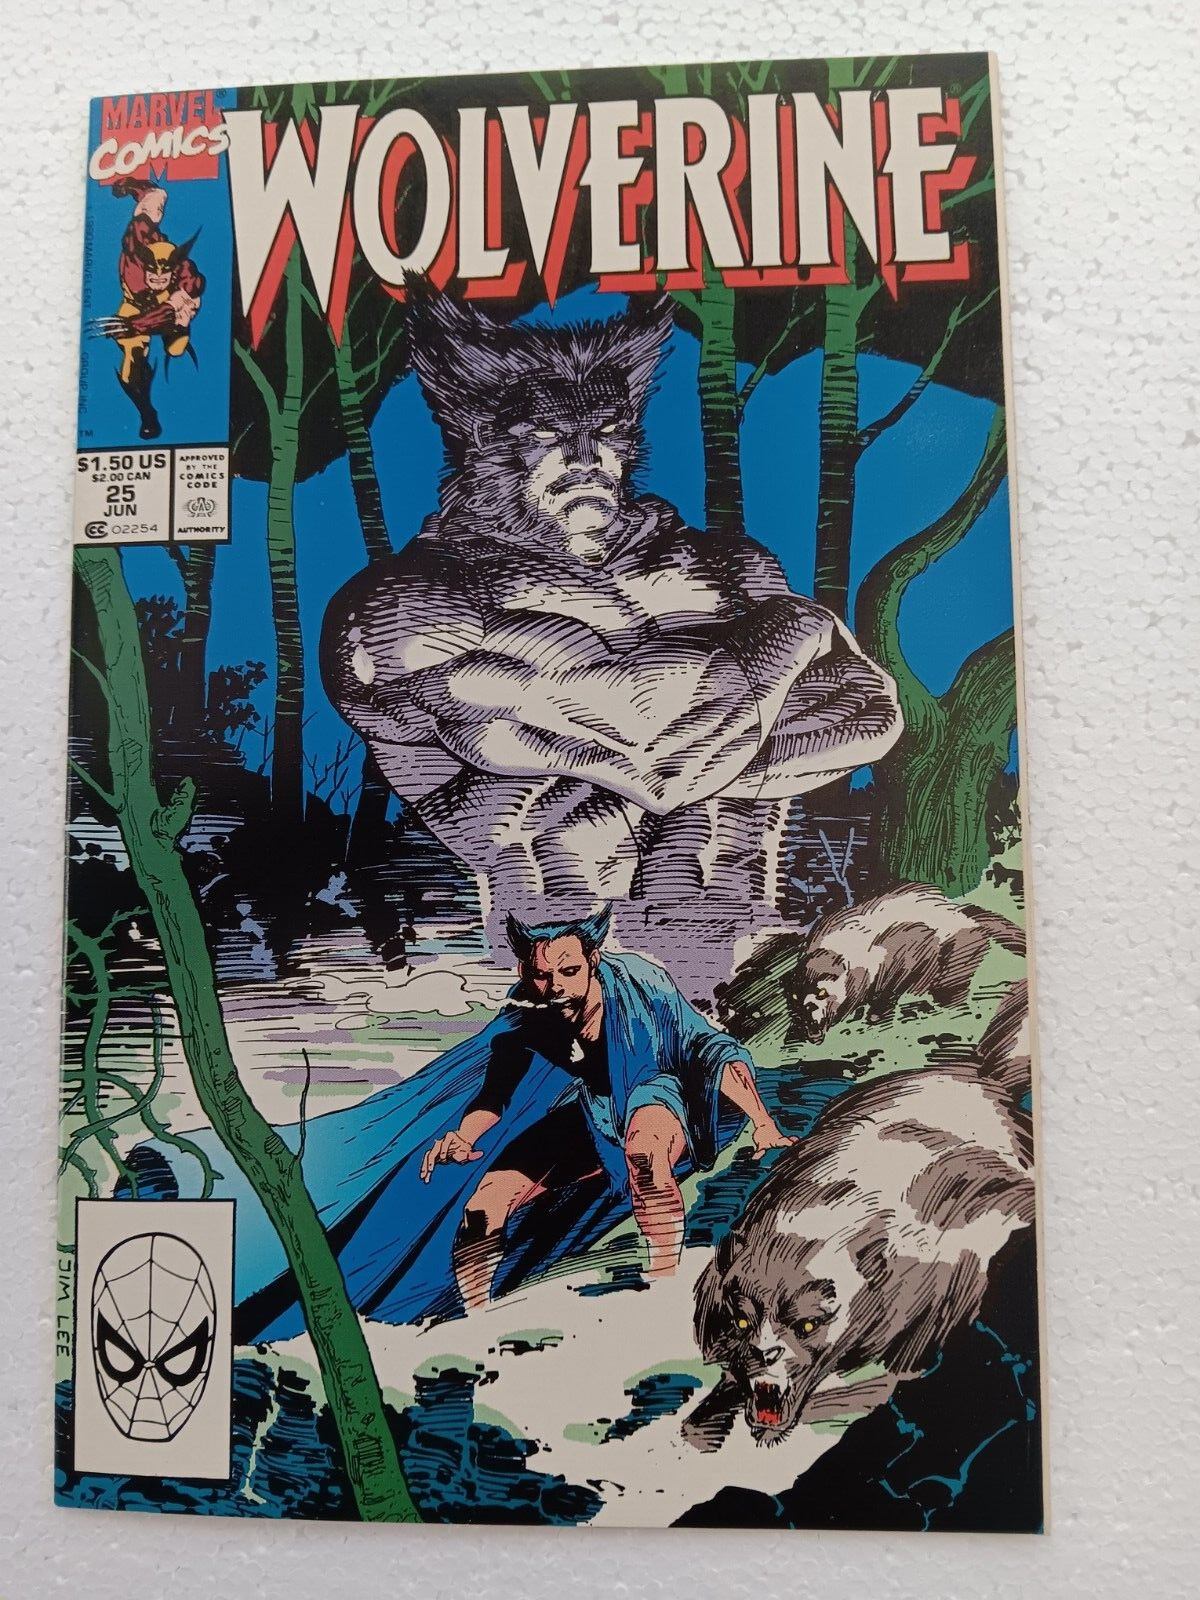 WOLVERINE Comic Book Number 25 (Marvel June 1990) 9.8 VERY NICE!